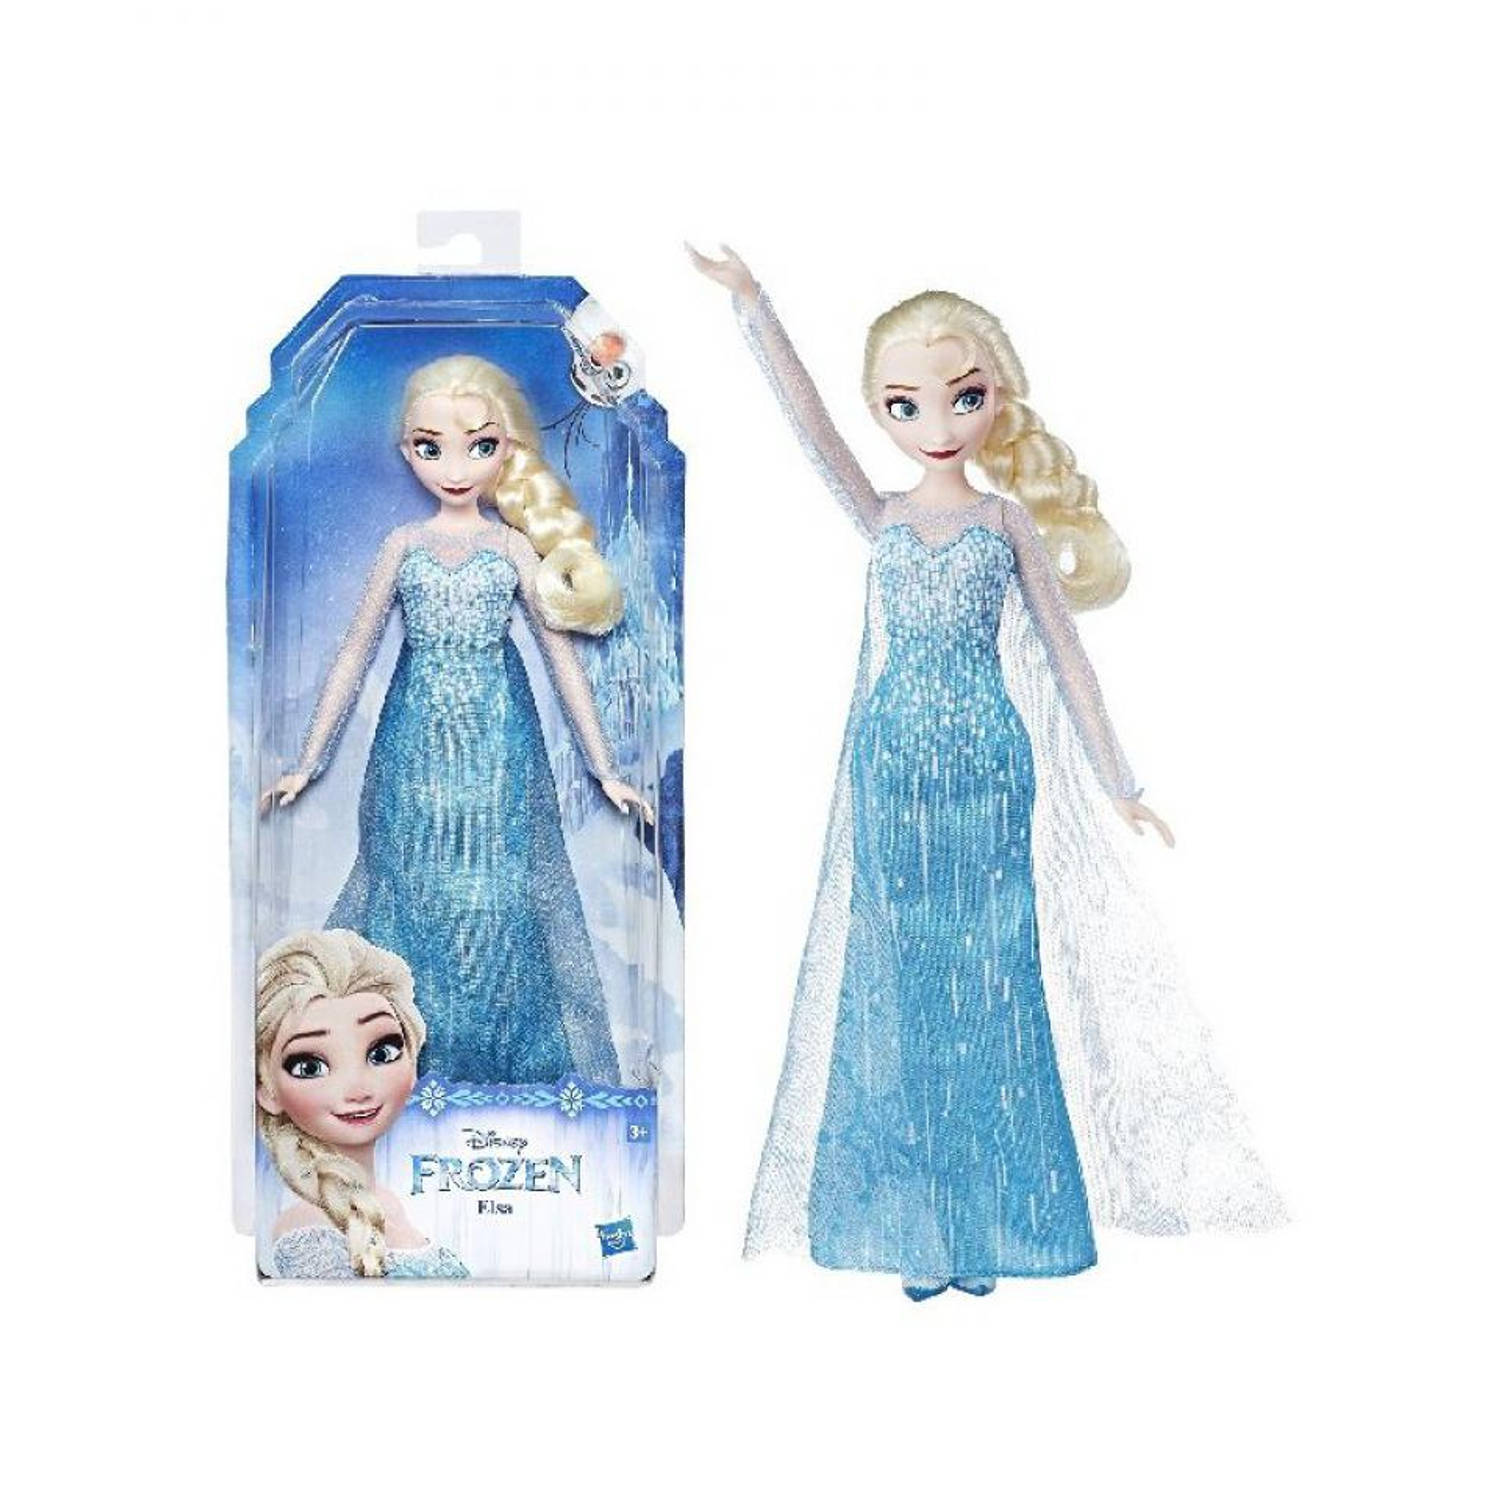 Moreel onderwijs Aan het liegen Onbeleefd Disney Frozen pop Elsa | Blokker